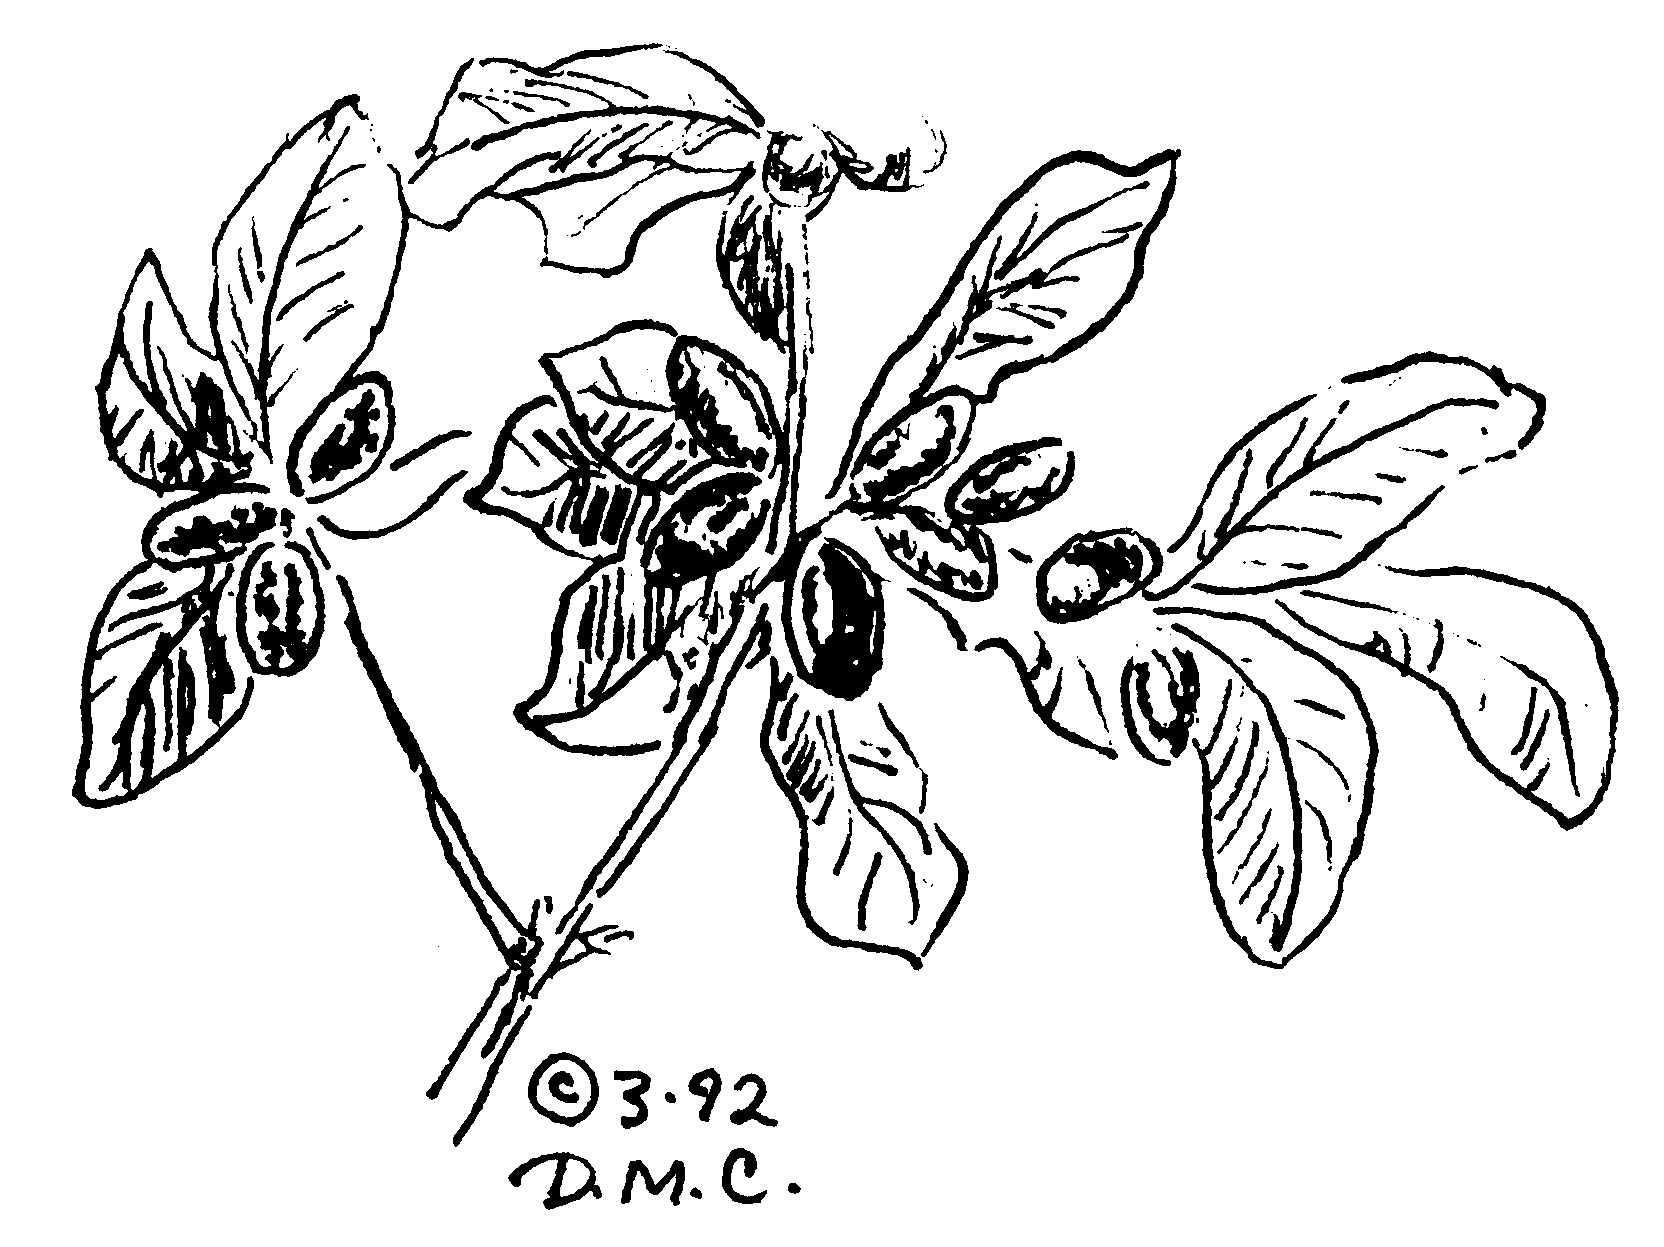 Miracle Fruit Sketch - DMC